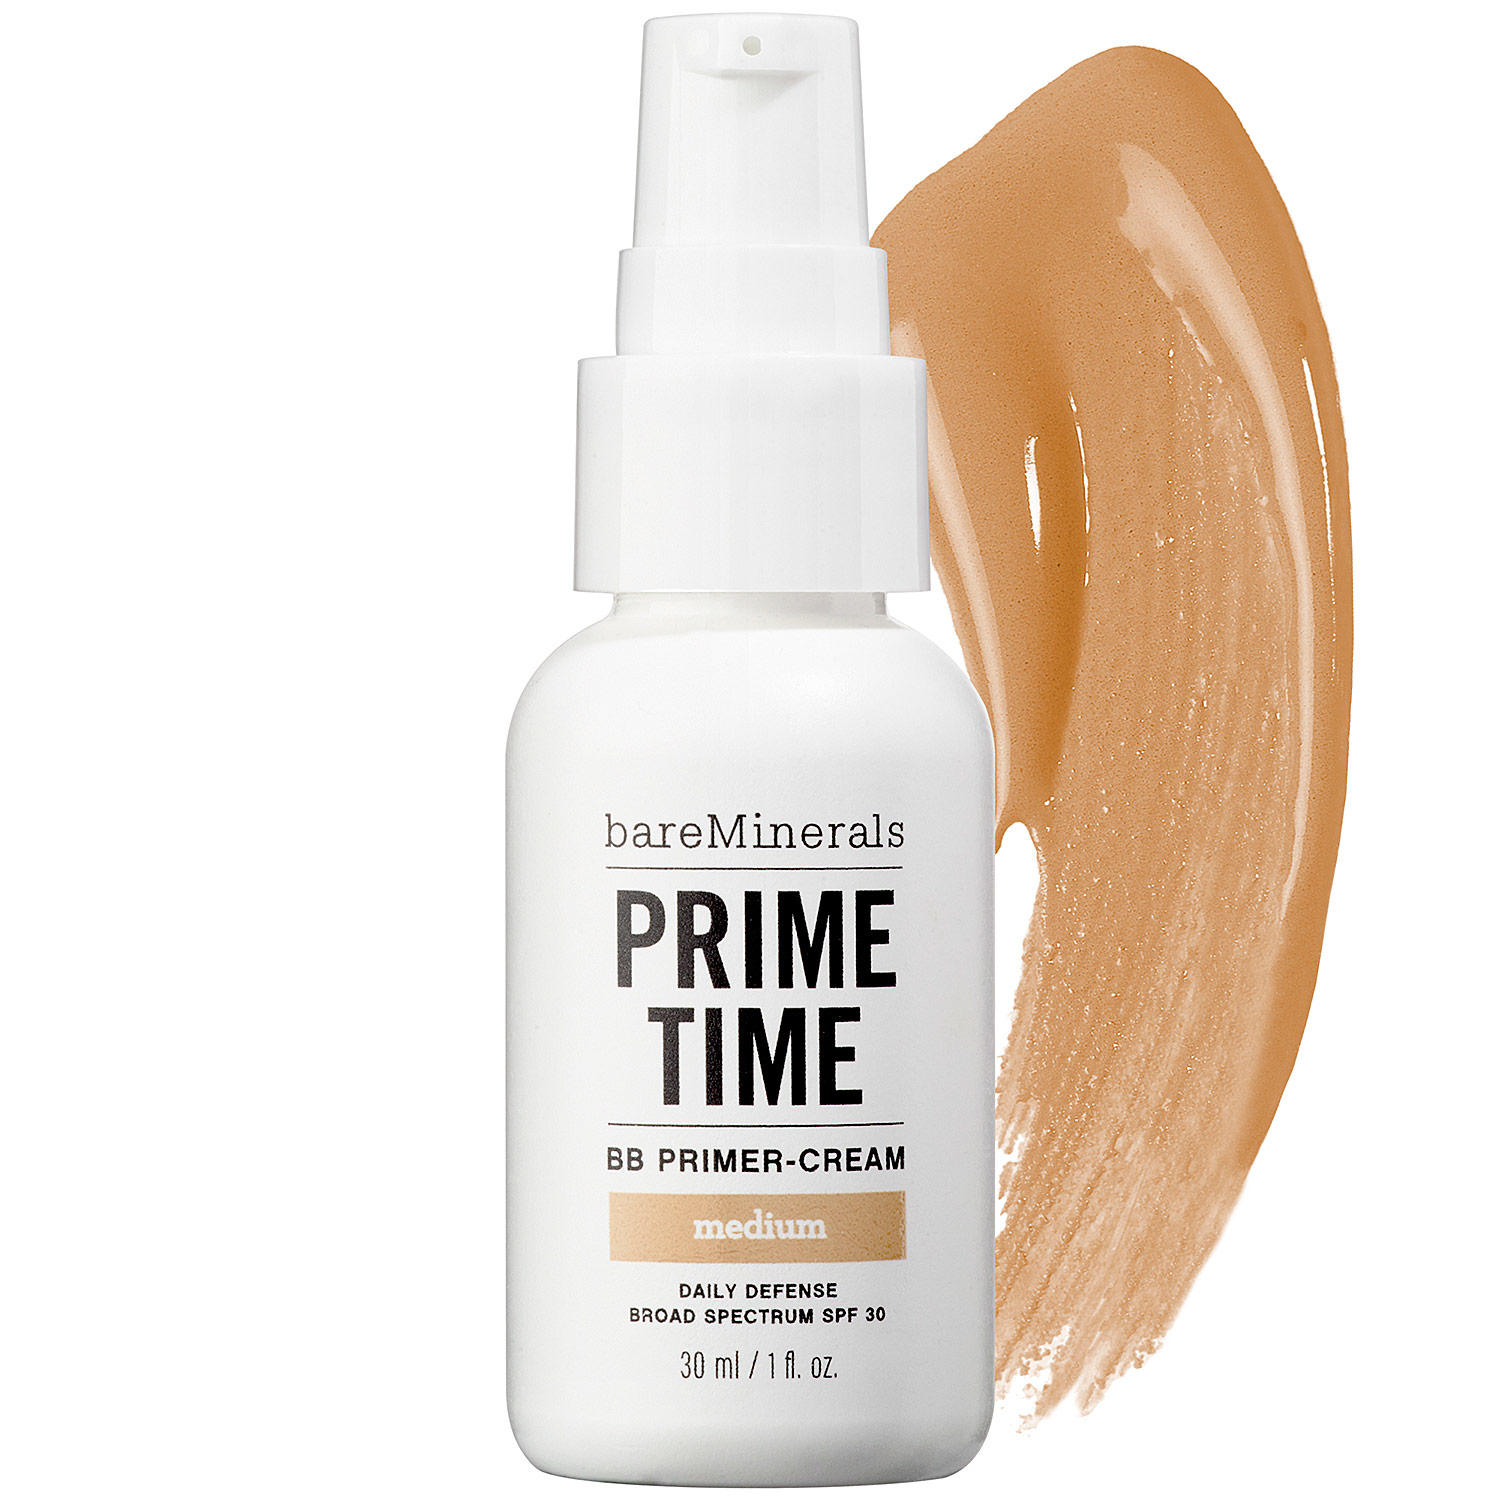 bareMinerals Prime Time BB Primer-Cream Medium